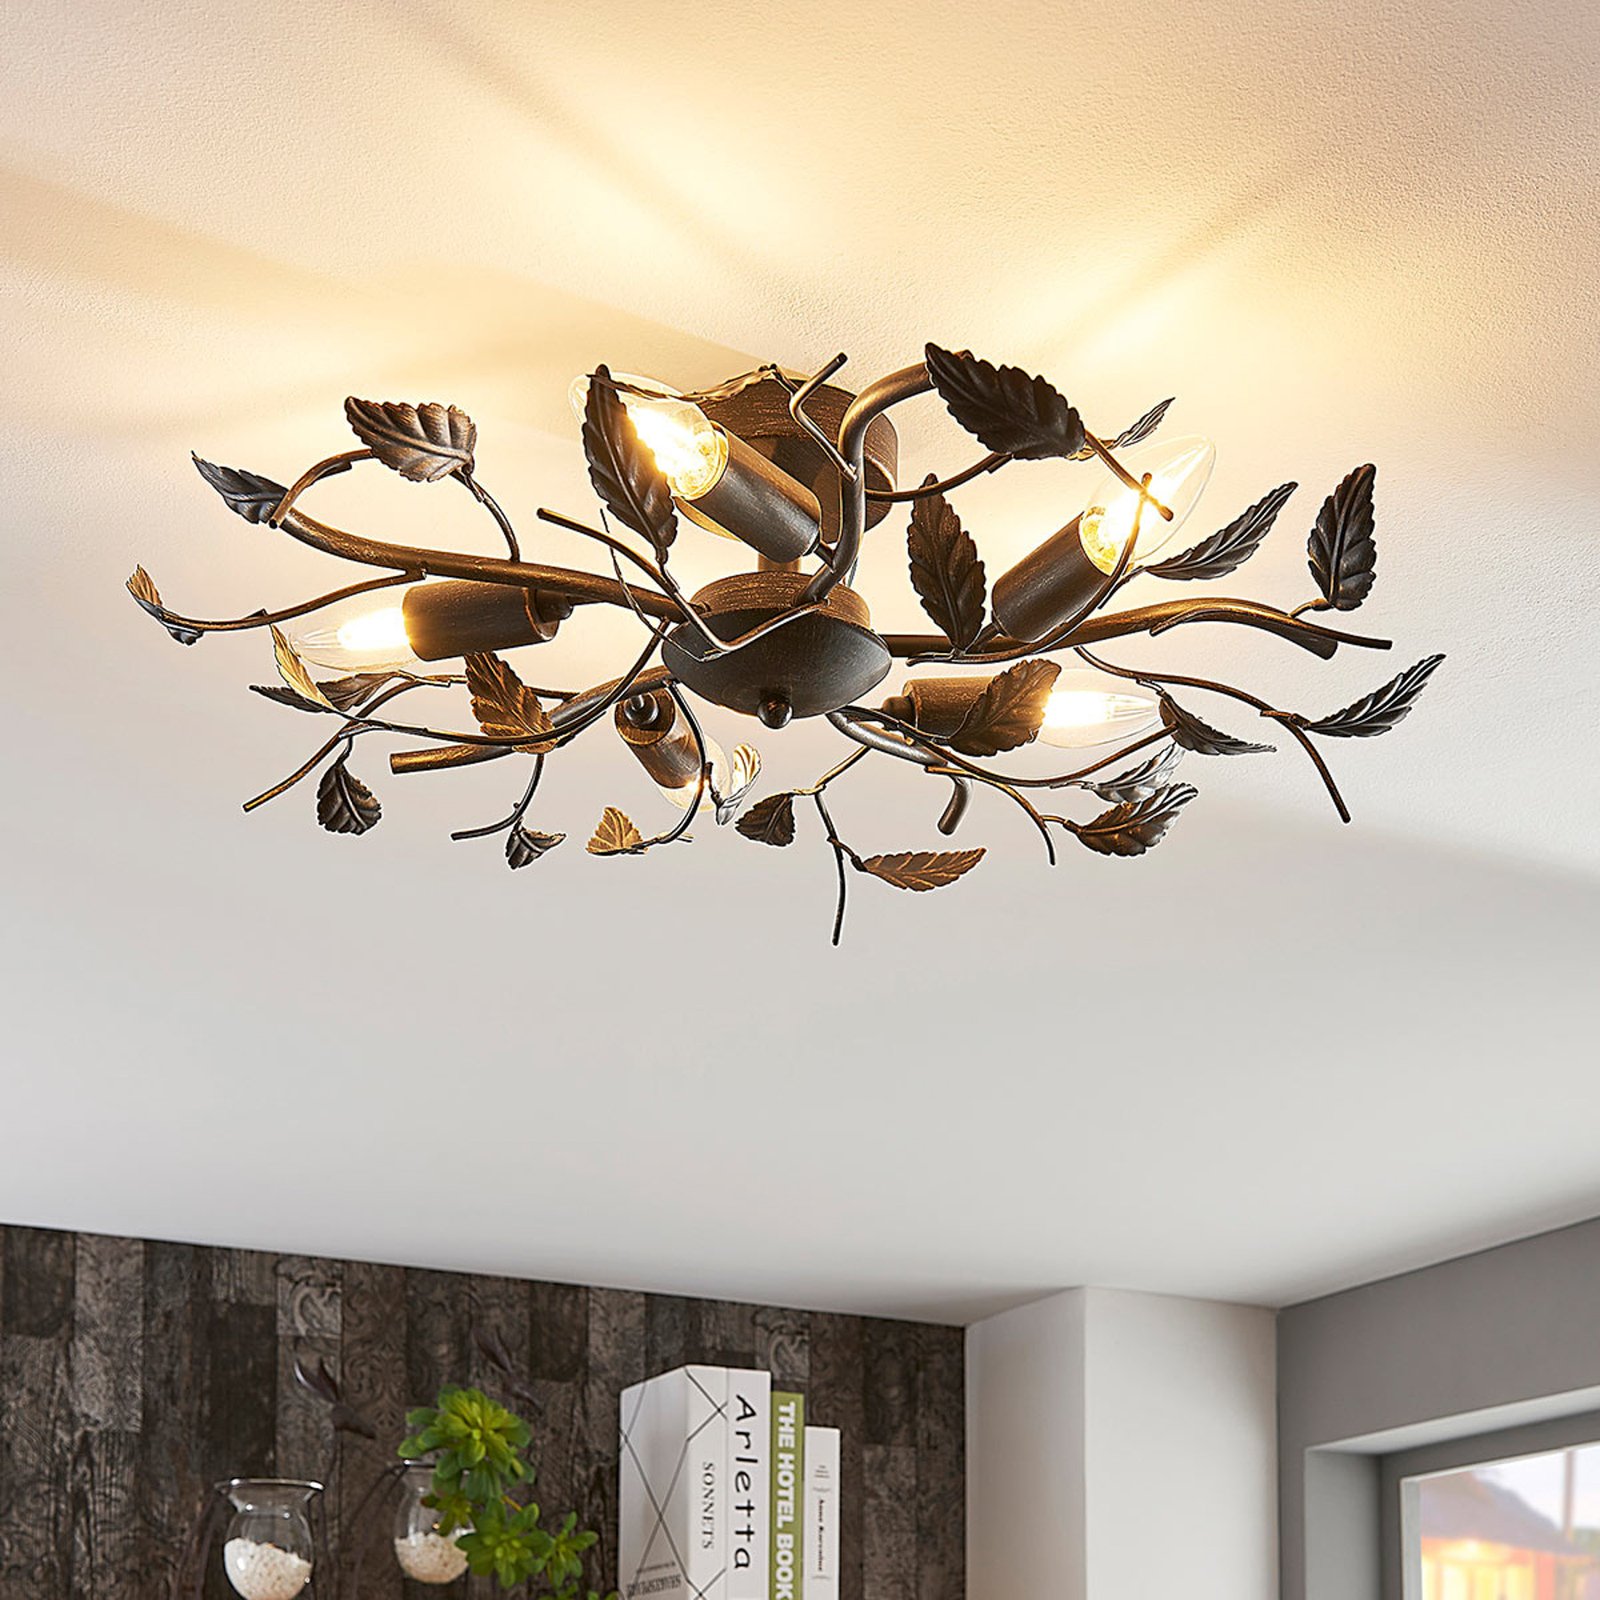 Decorativa lámpara de techo Yos, diseño de hojas